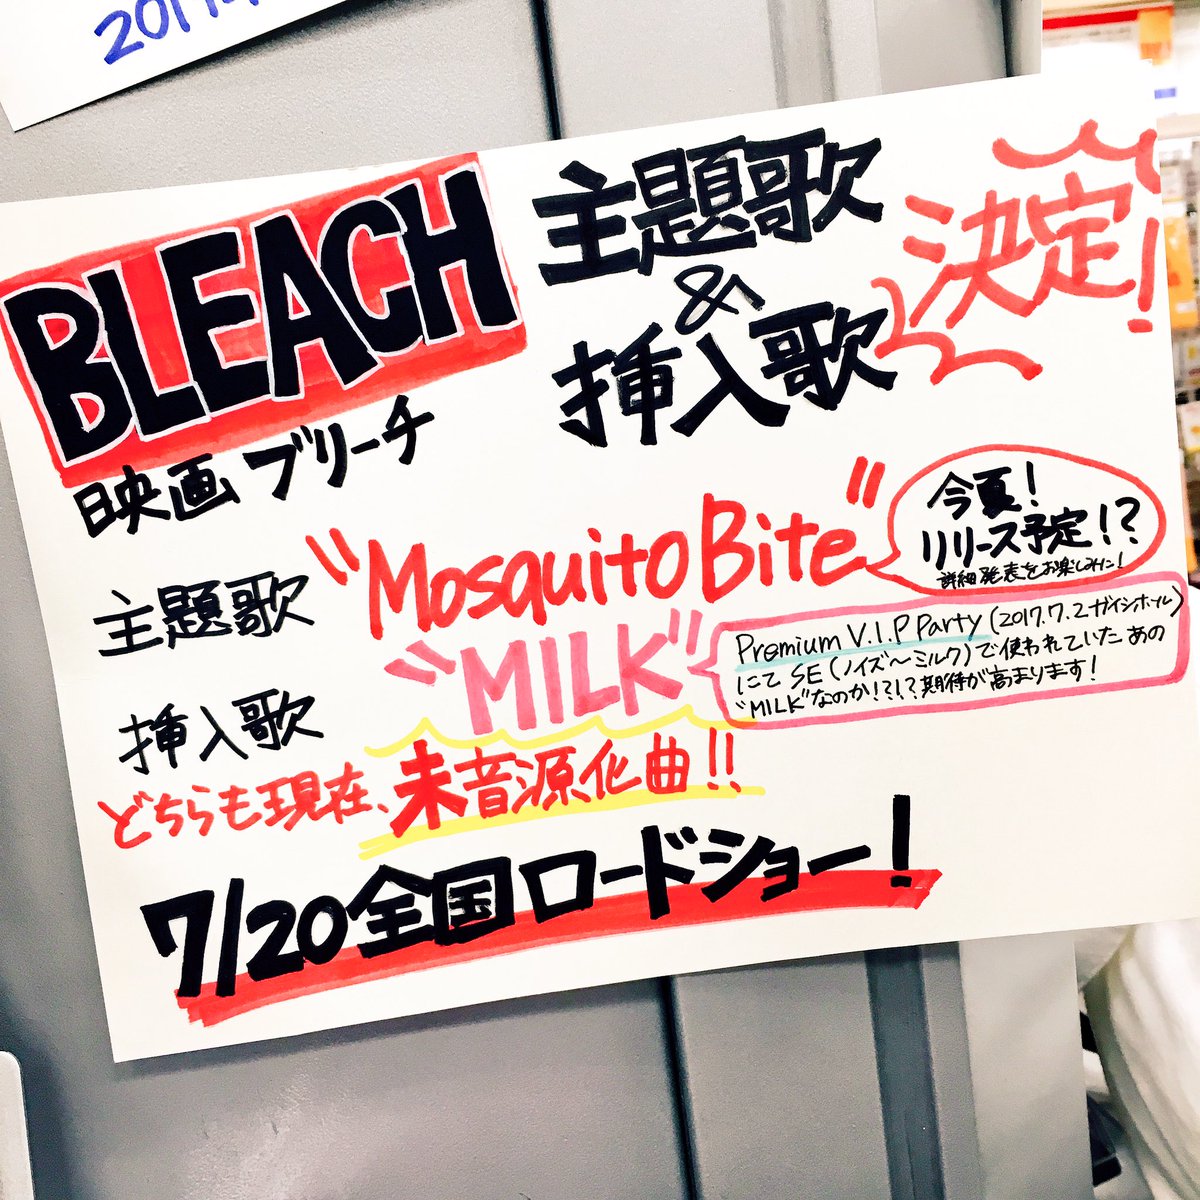 タワーレコード名古屋パルコ店 Alexandros Mosquito Bite 7 18リリース決定 っ 映画 Bleach 主題歌 Mosquito Bite と挿入歌 Milk の2曲収録 さらに なんと 昨年名古屋ガイシホールで行われた Premium V I P Party 17 ライブ